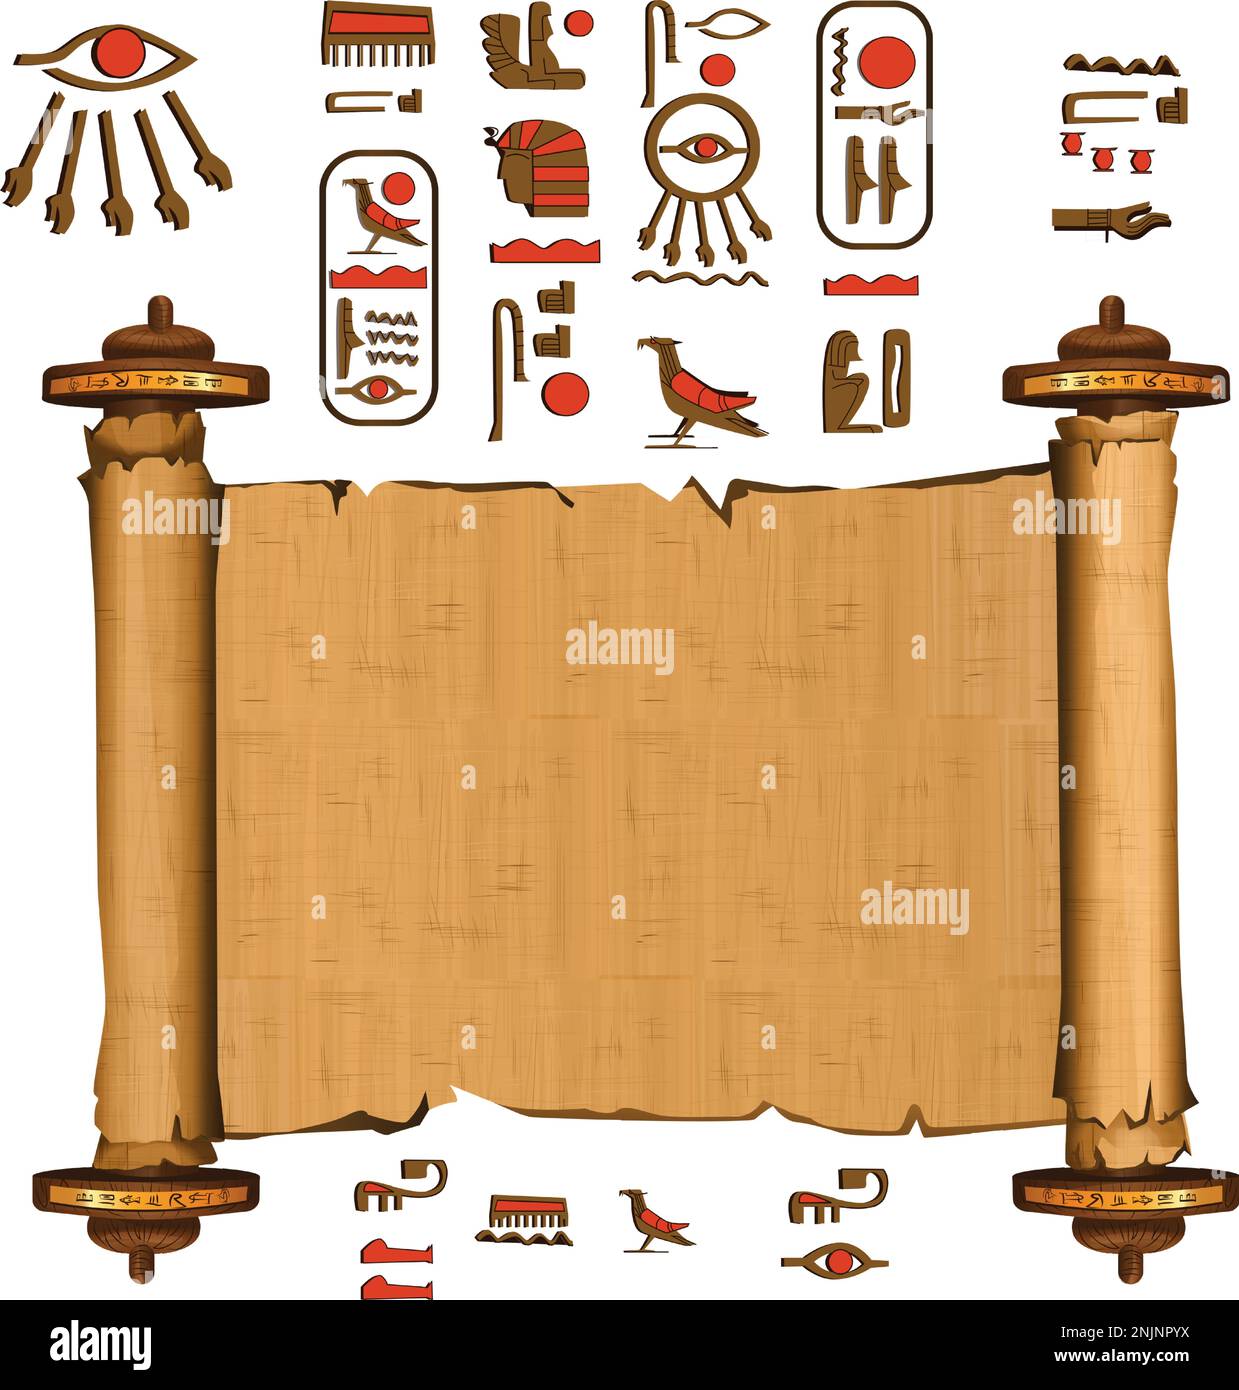 Alte ägyptische Papyrus-Schriftrolle mit Holzstäbchen-Cartoon-Vektor. Antikes Papier mit Hieroglyphen und ägyptischen Kultursymbolen, antiken Göttern, heiligen Vogel, isoliertes Manuskript auf weißem Hintergrund Stock Vektor